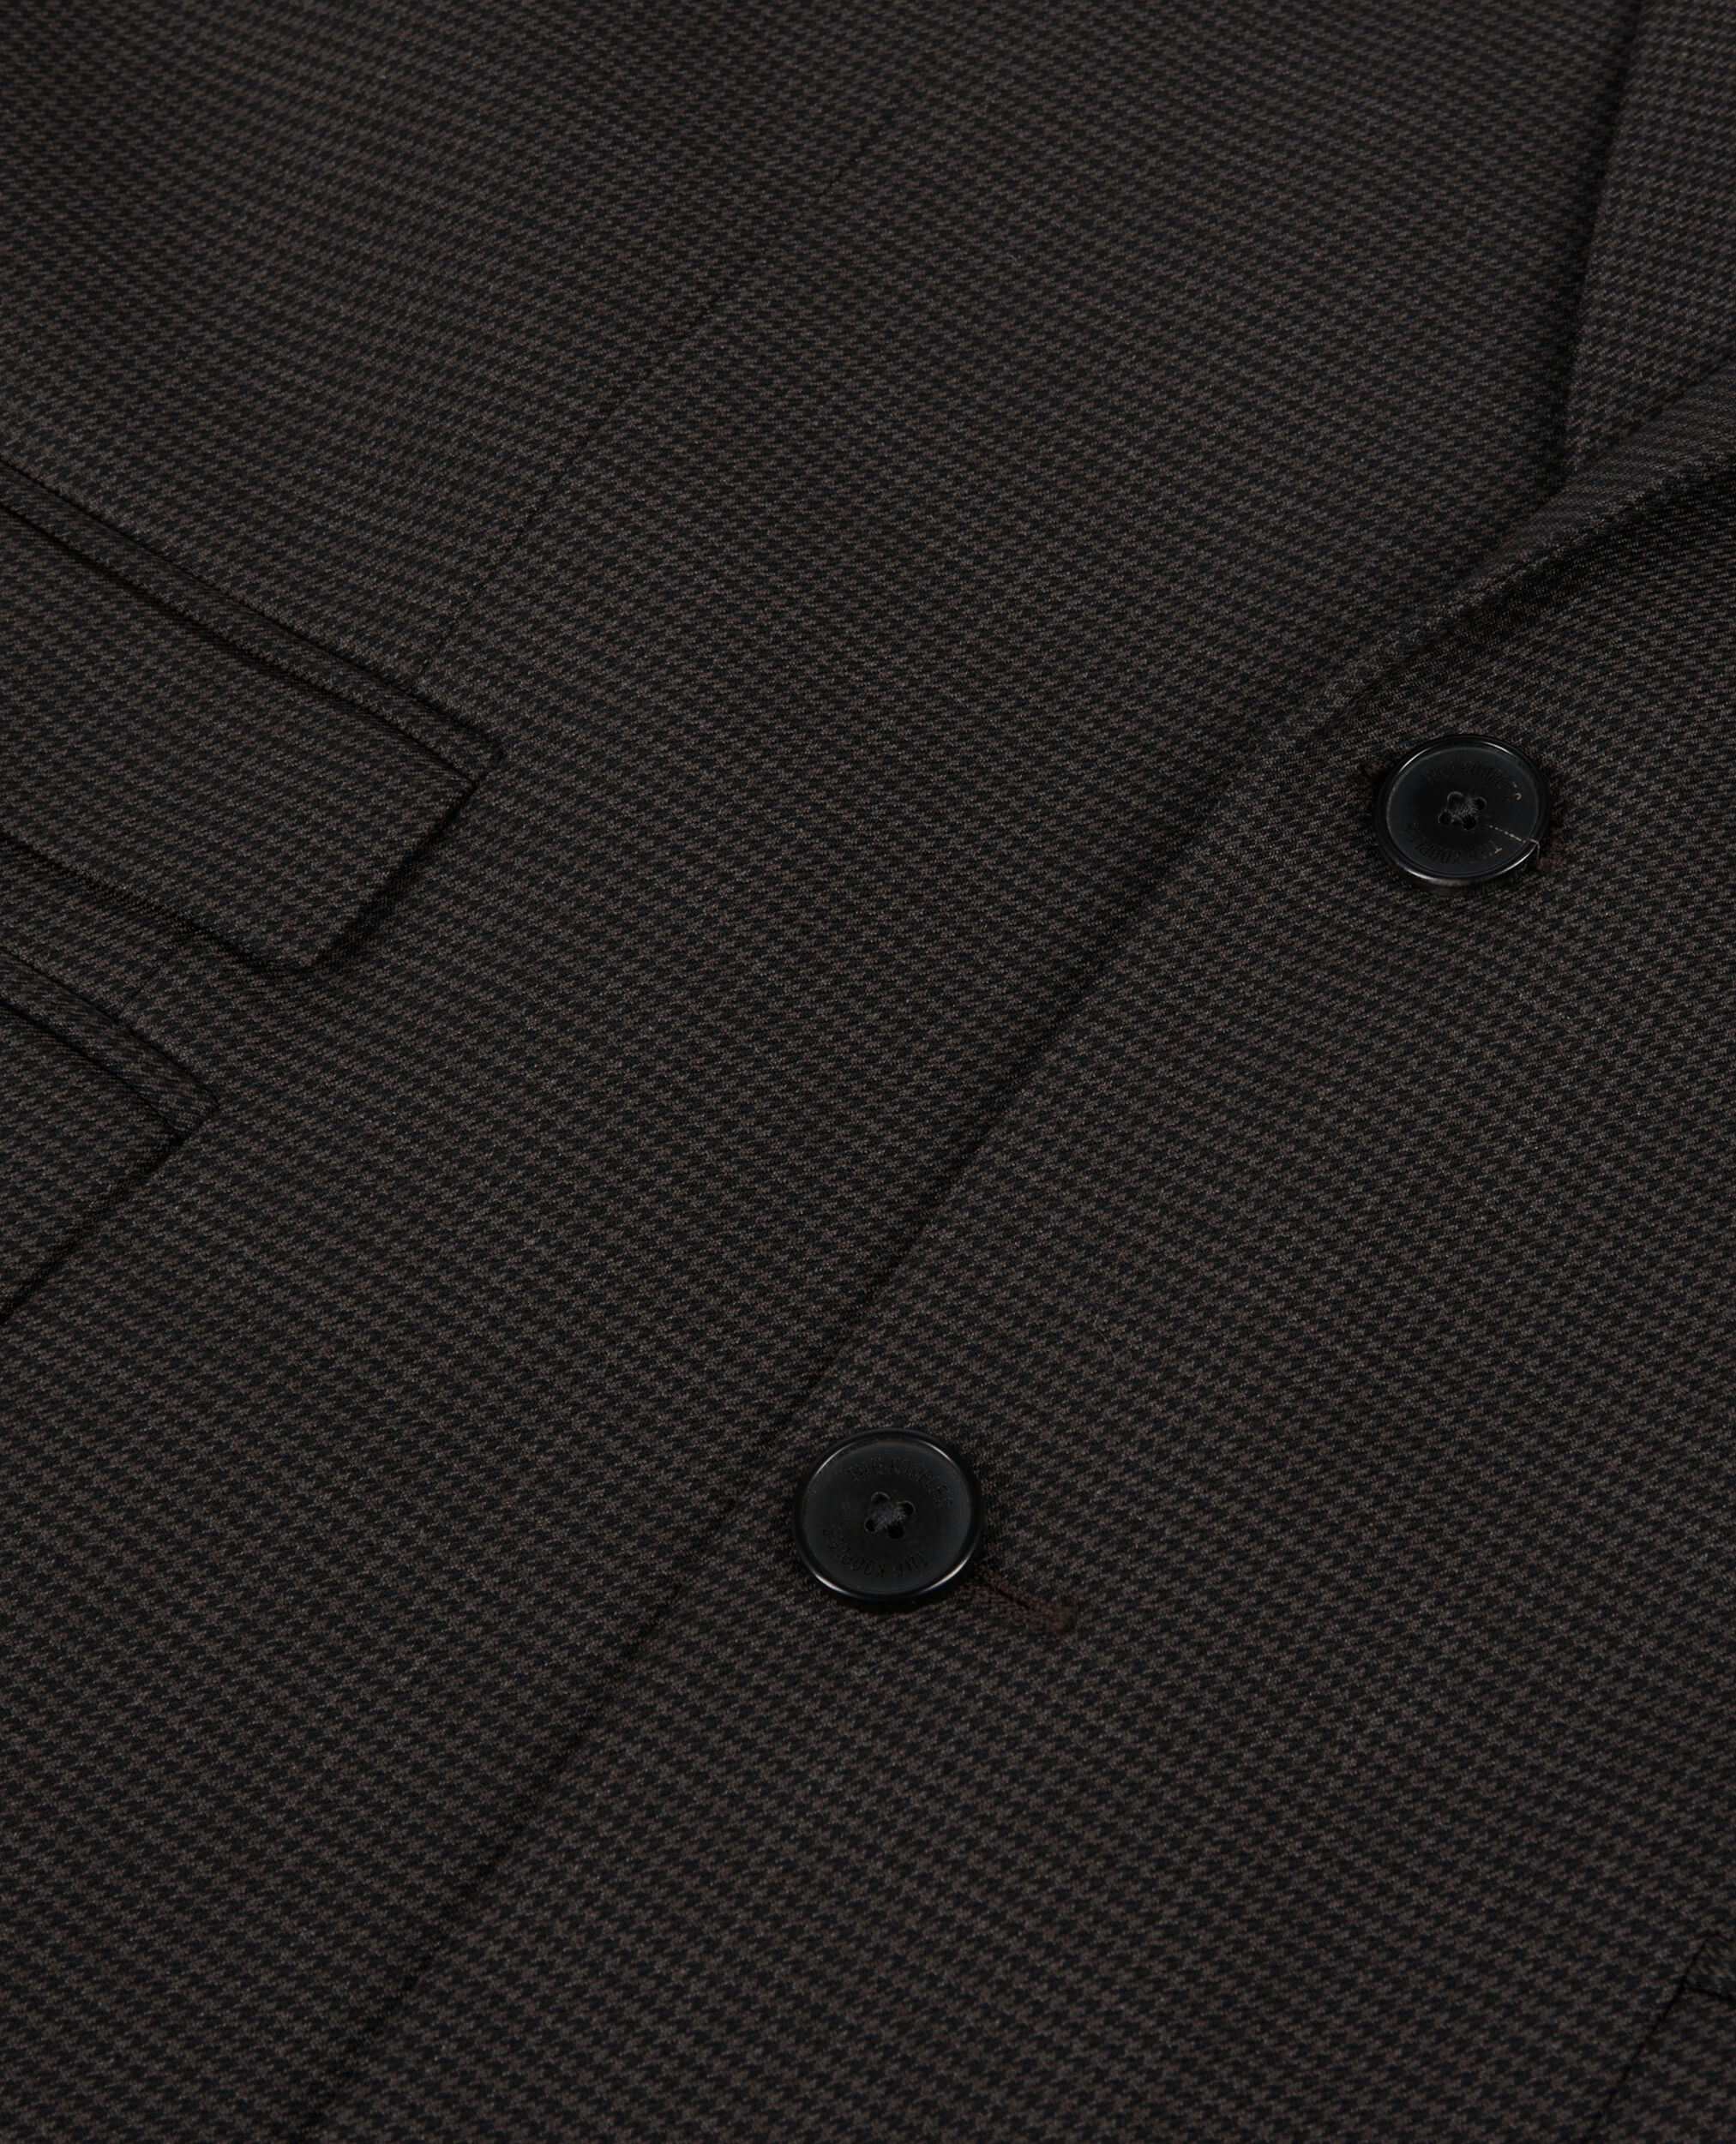 Brown houndstooth wool suit jacket, BROWN / BLACK, hi-res image number null